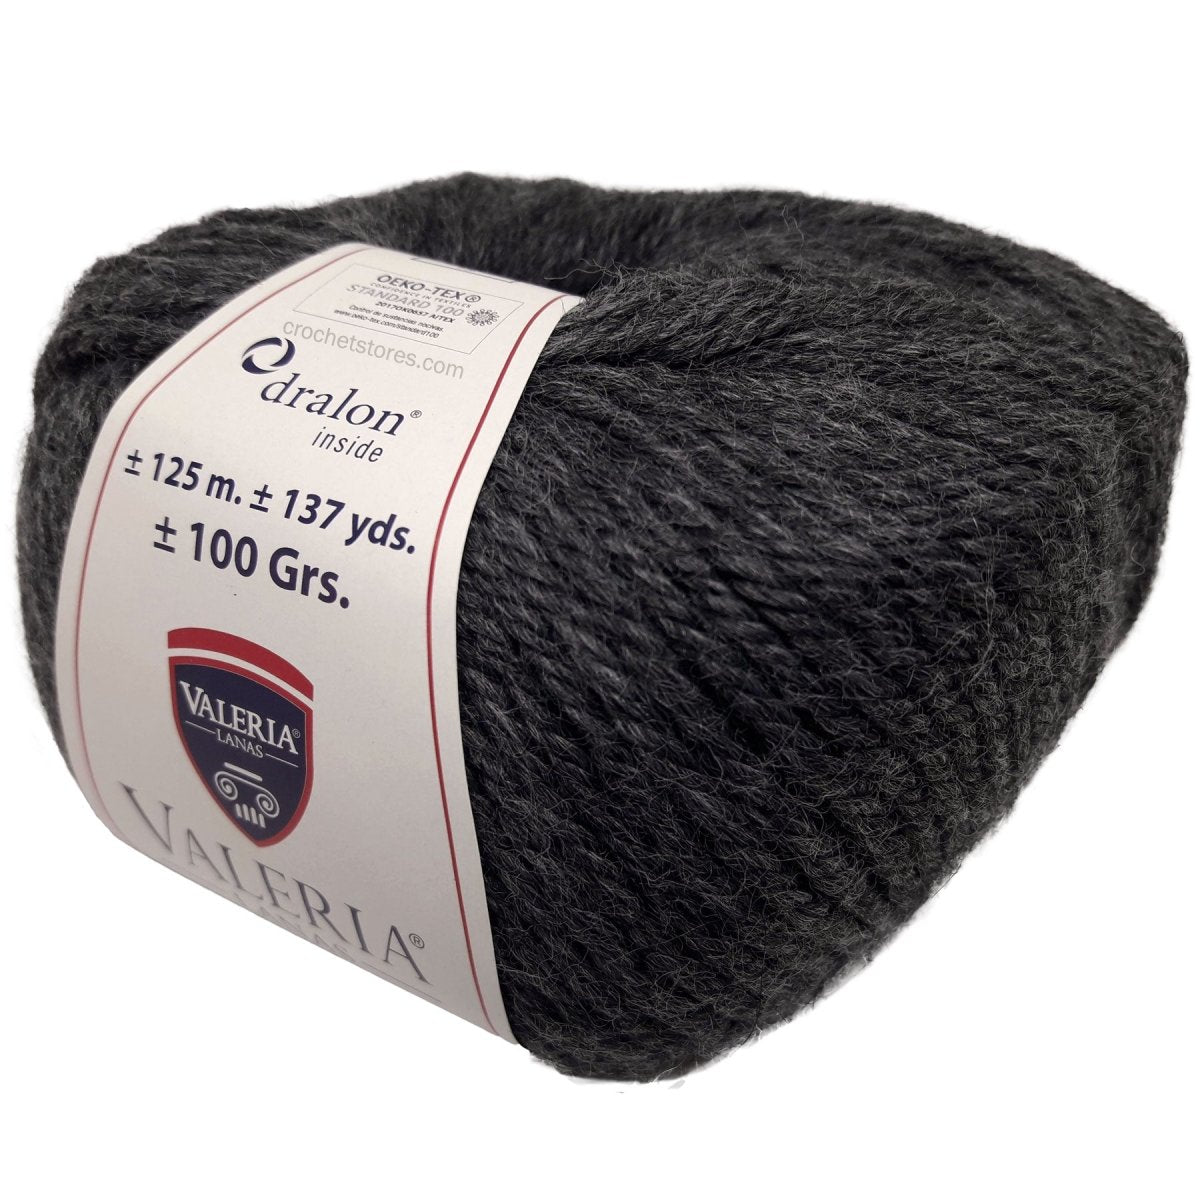 MERINO TOP - Crochetstores1008-1338435411405182